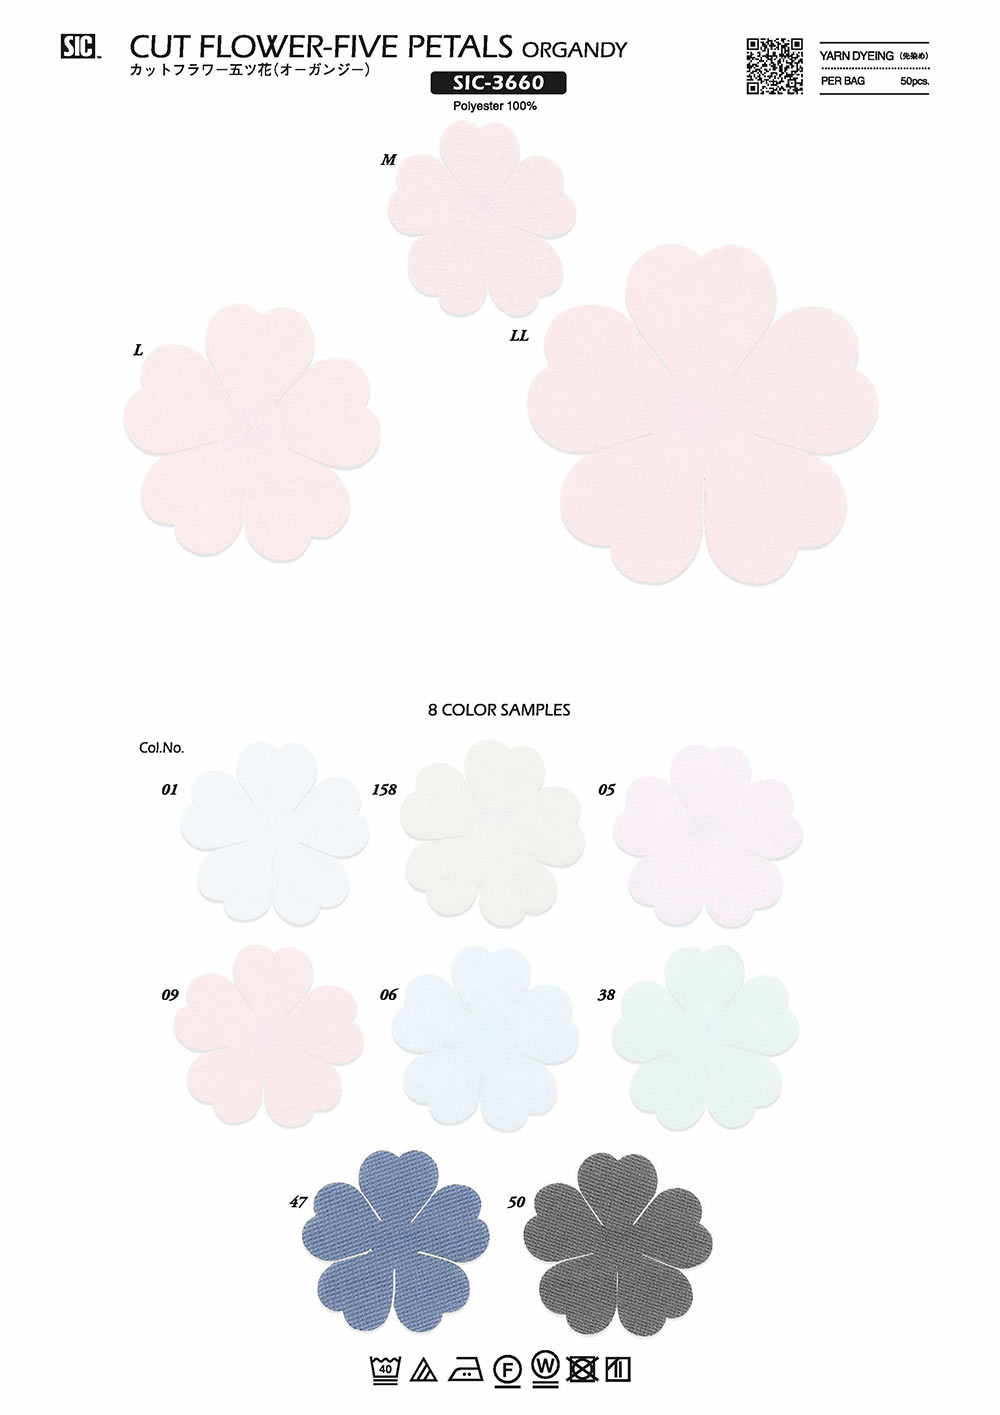 SIC-3660 Flor Cortada Cinco Flores (Organdi)[Produtos Diversos E Outros] SHINDO(SIC)